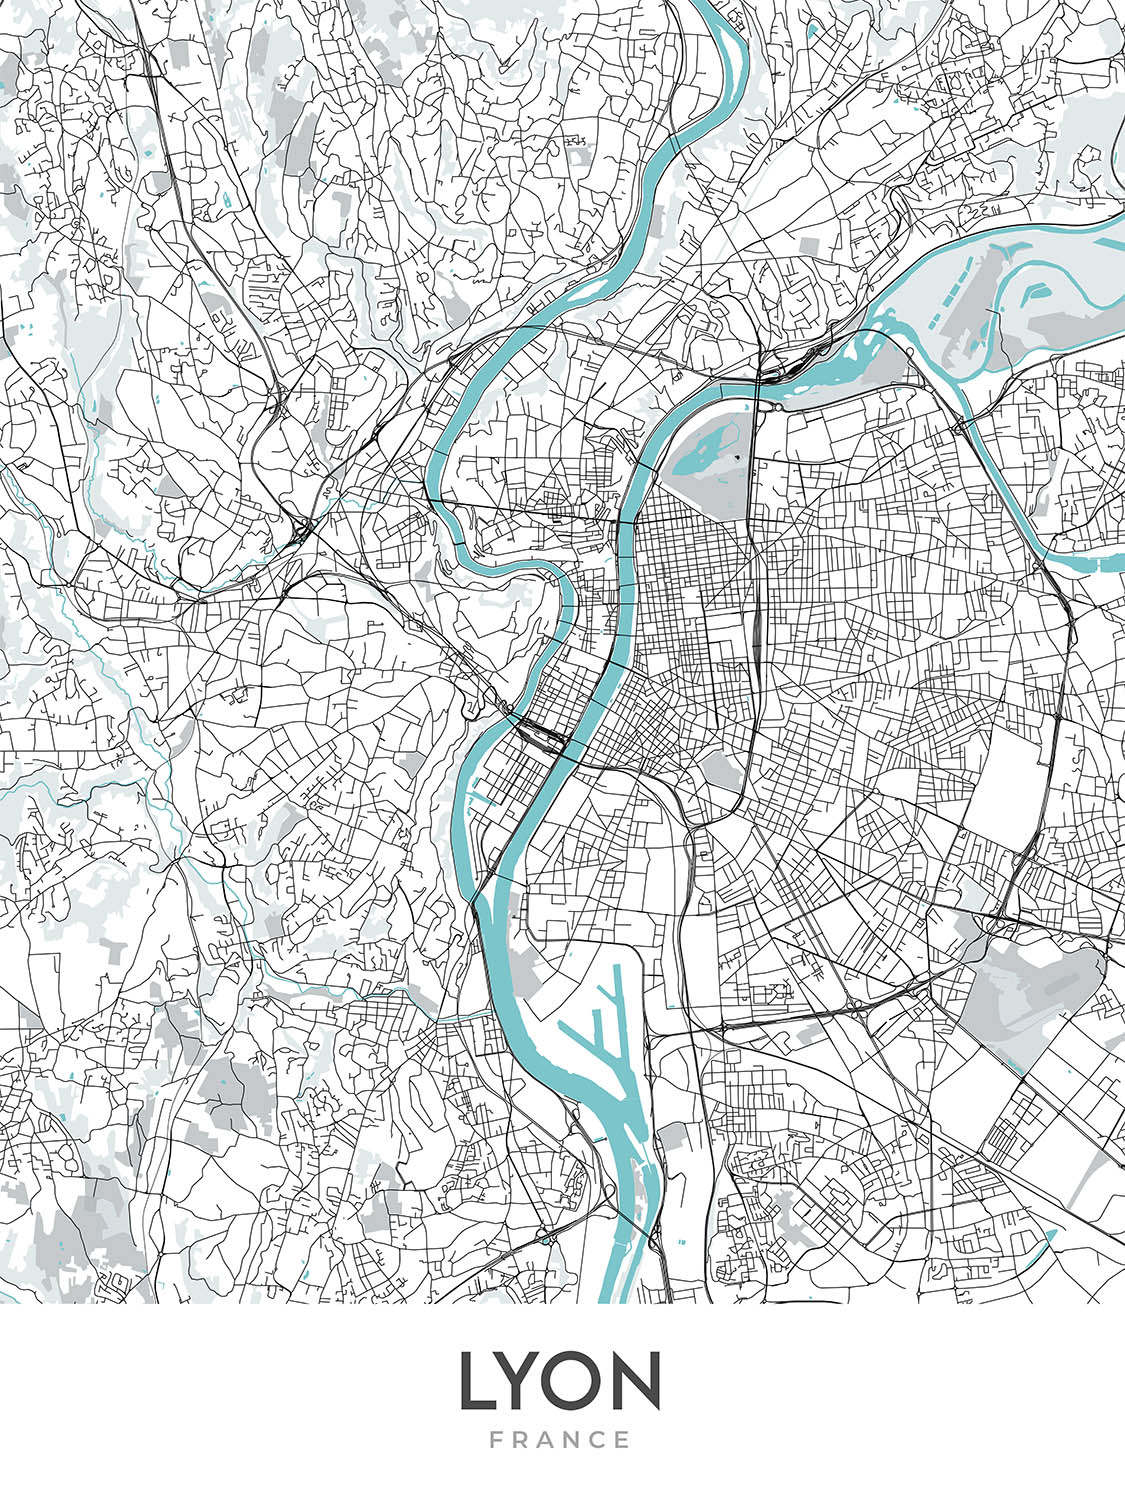 Mapa moderno de la ciudad de Lyon, Francia: Croix-Rousse, Notre-Dame, Parc de la Tête d'Or, Presqu'île, Vieux Lyon